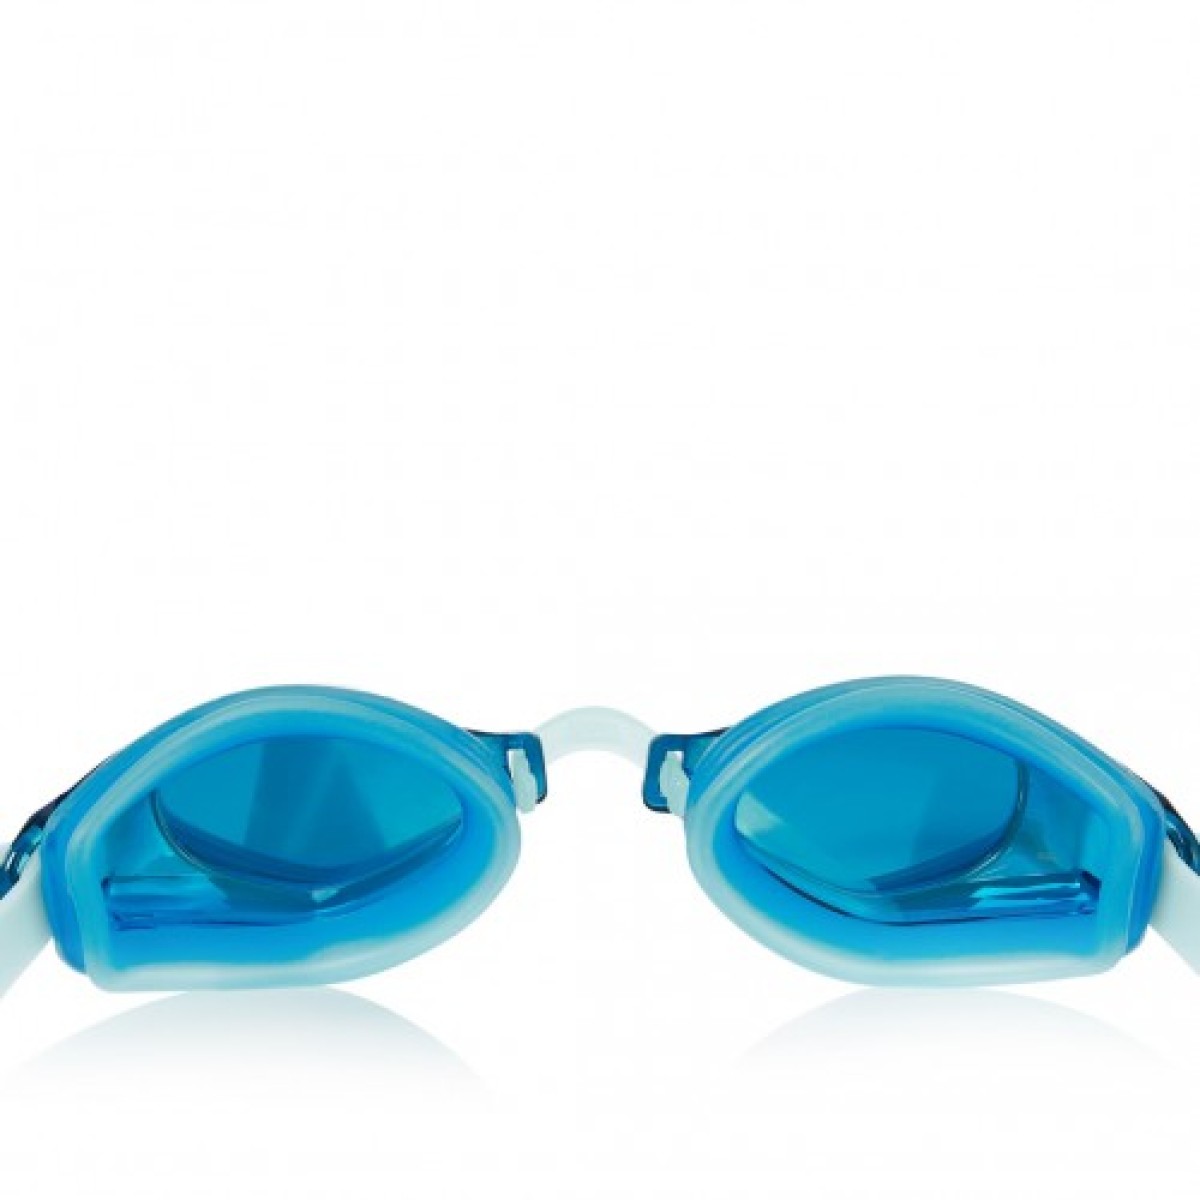 Swimming goggles Endura Mirror blue/silver ZOGGS - view 3